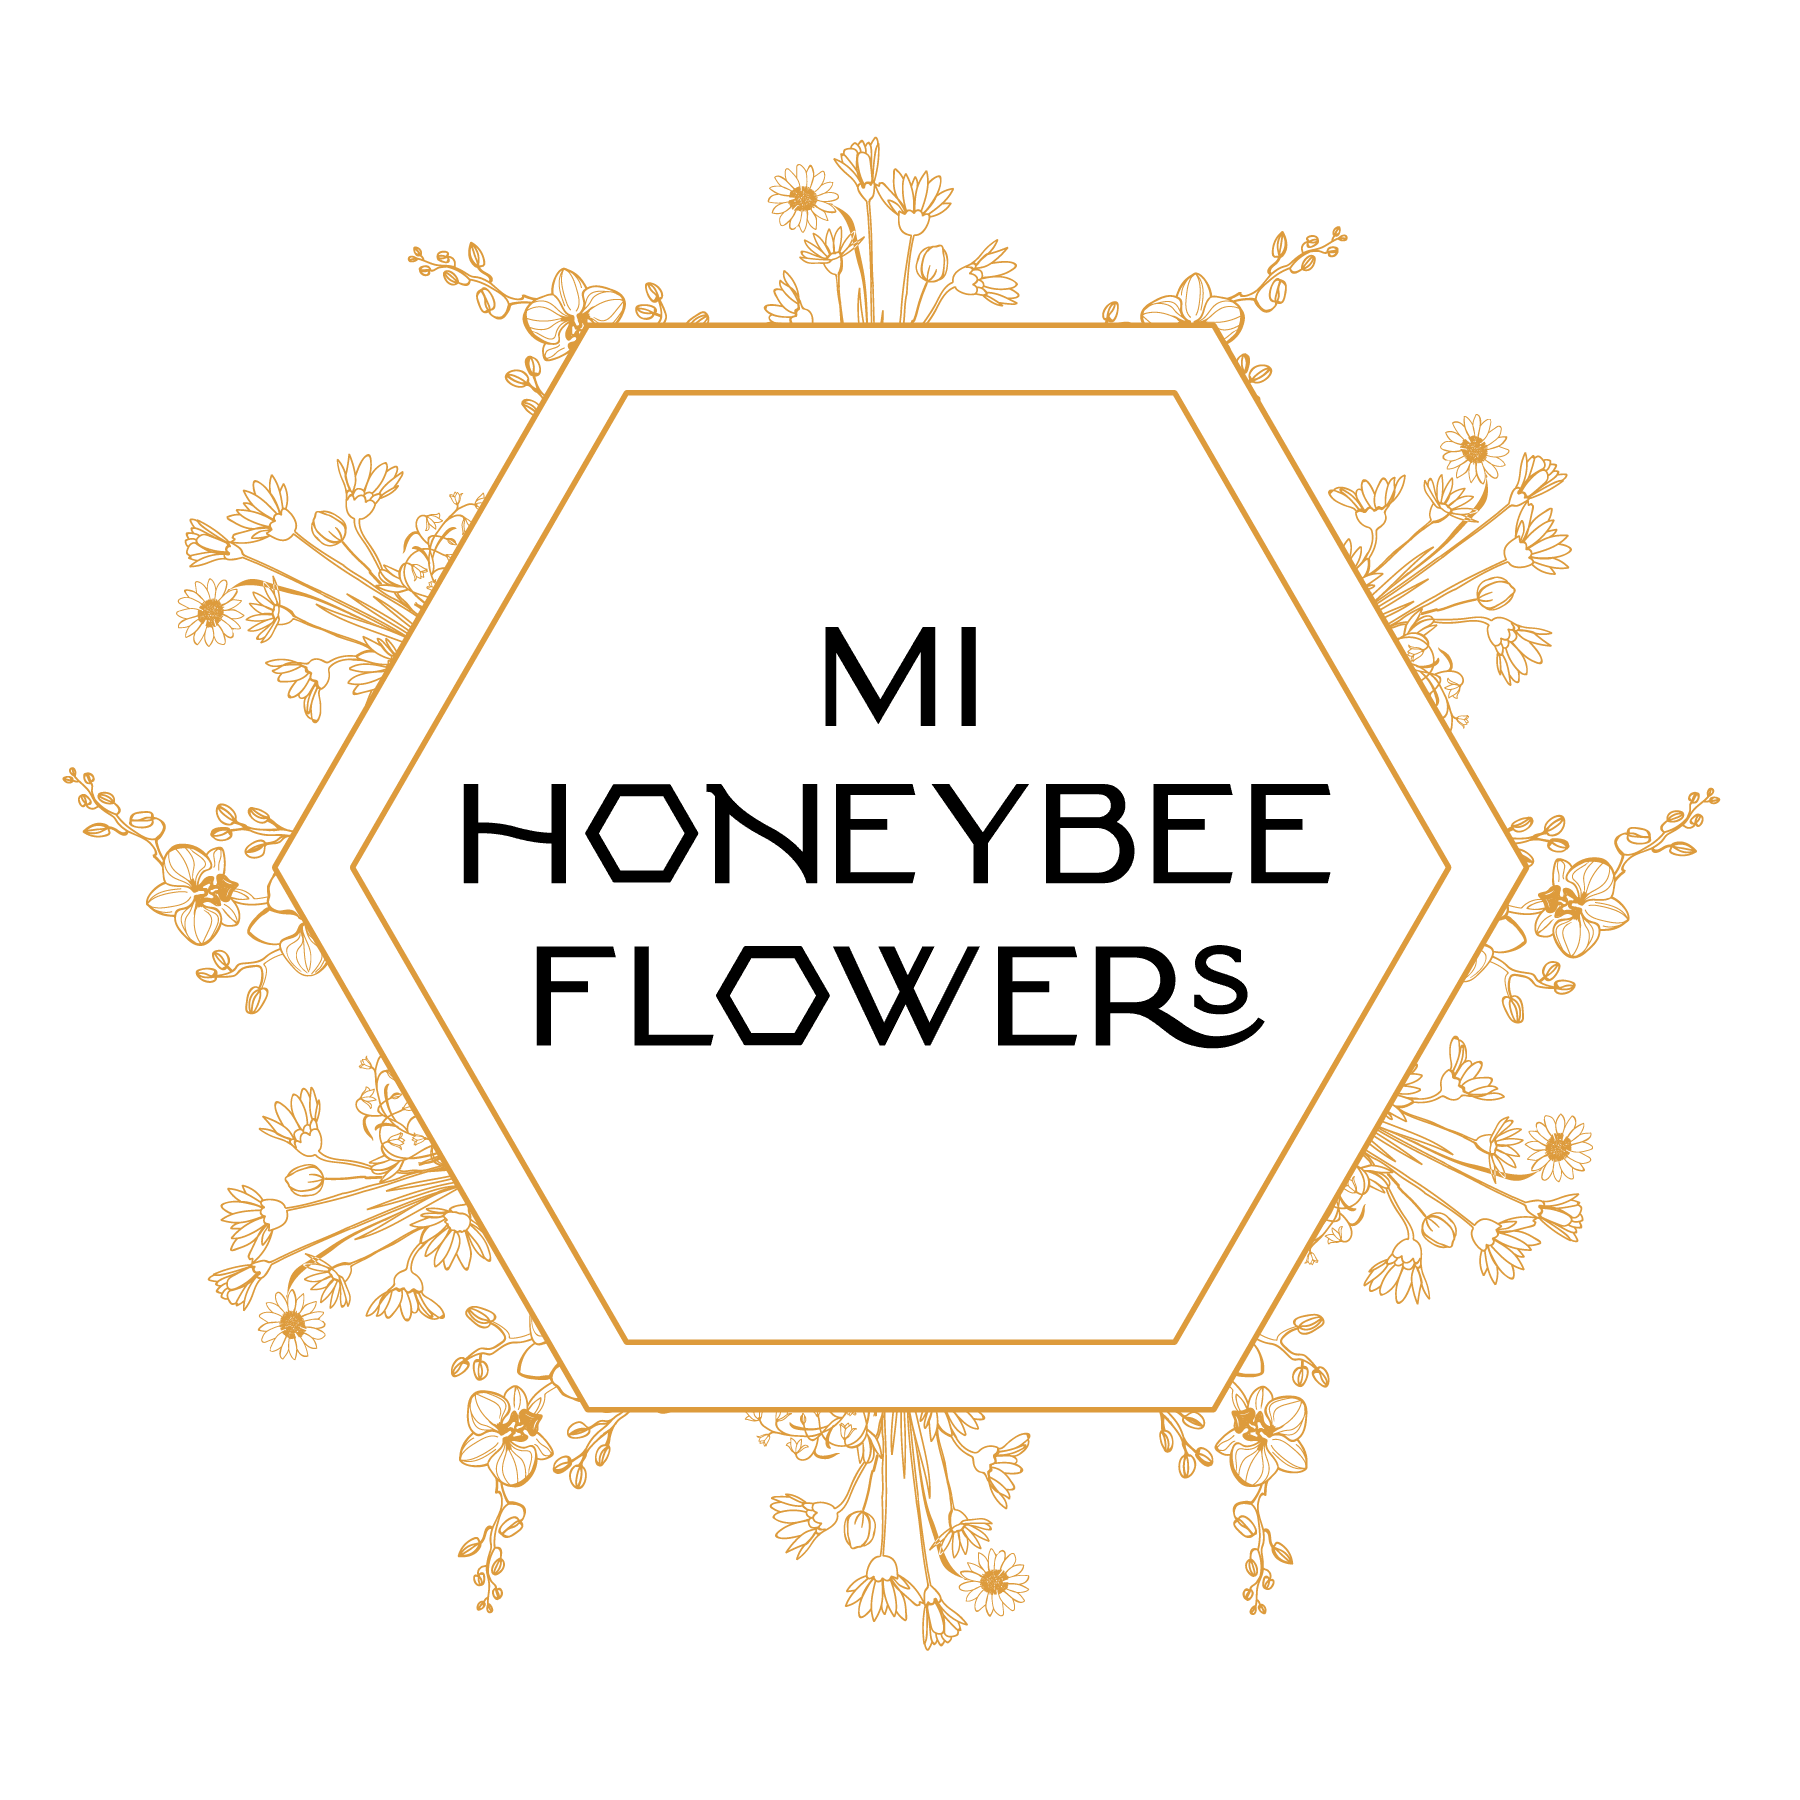 MI Honeybee Flowers